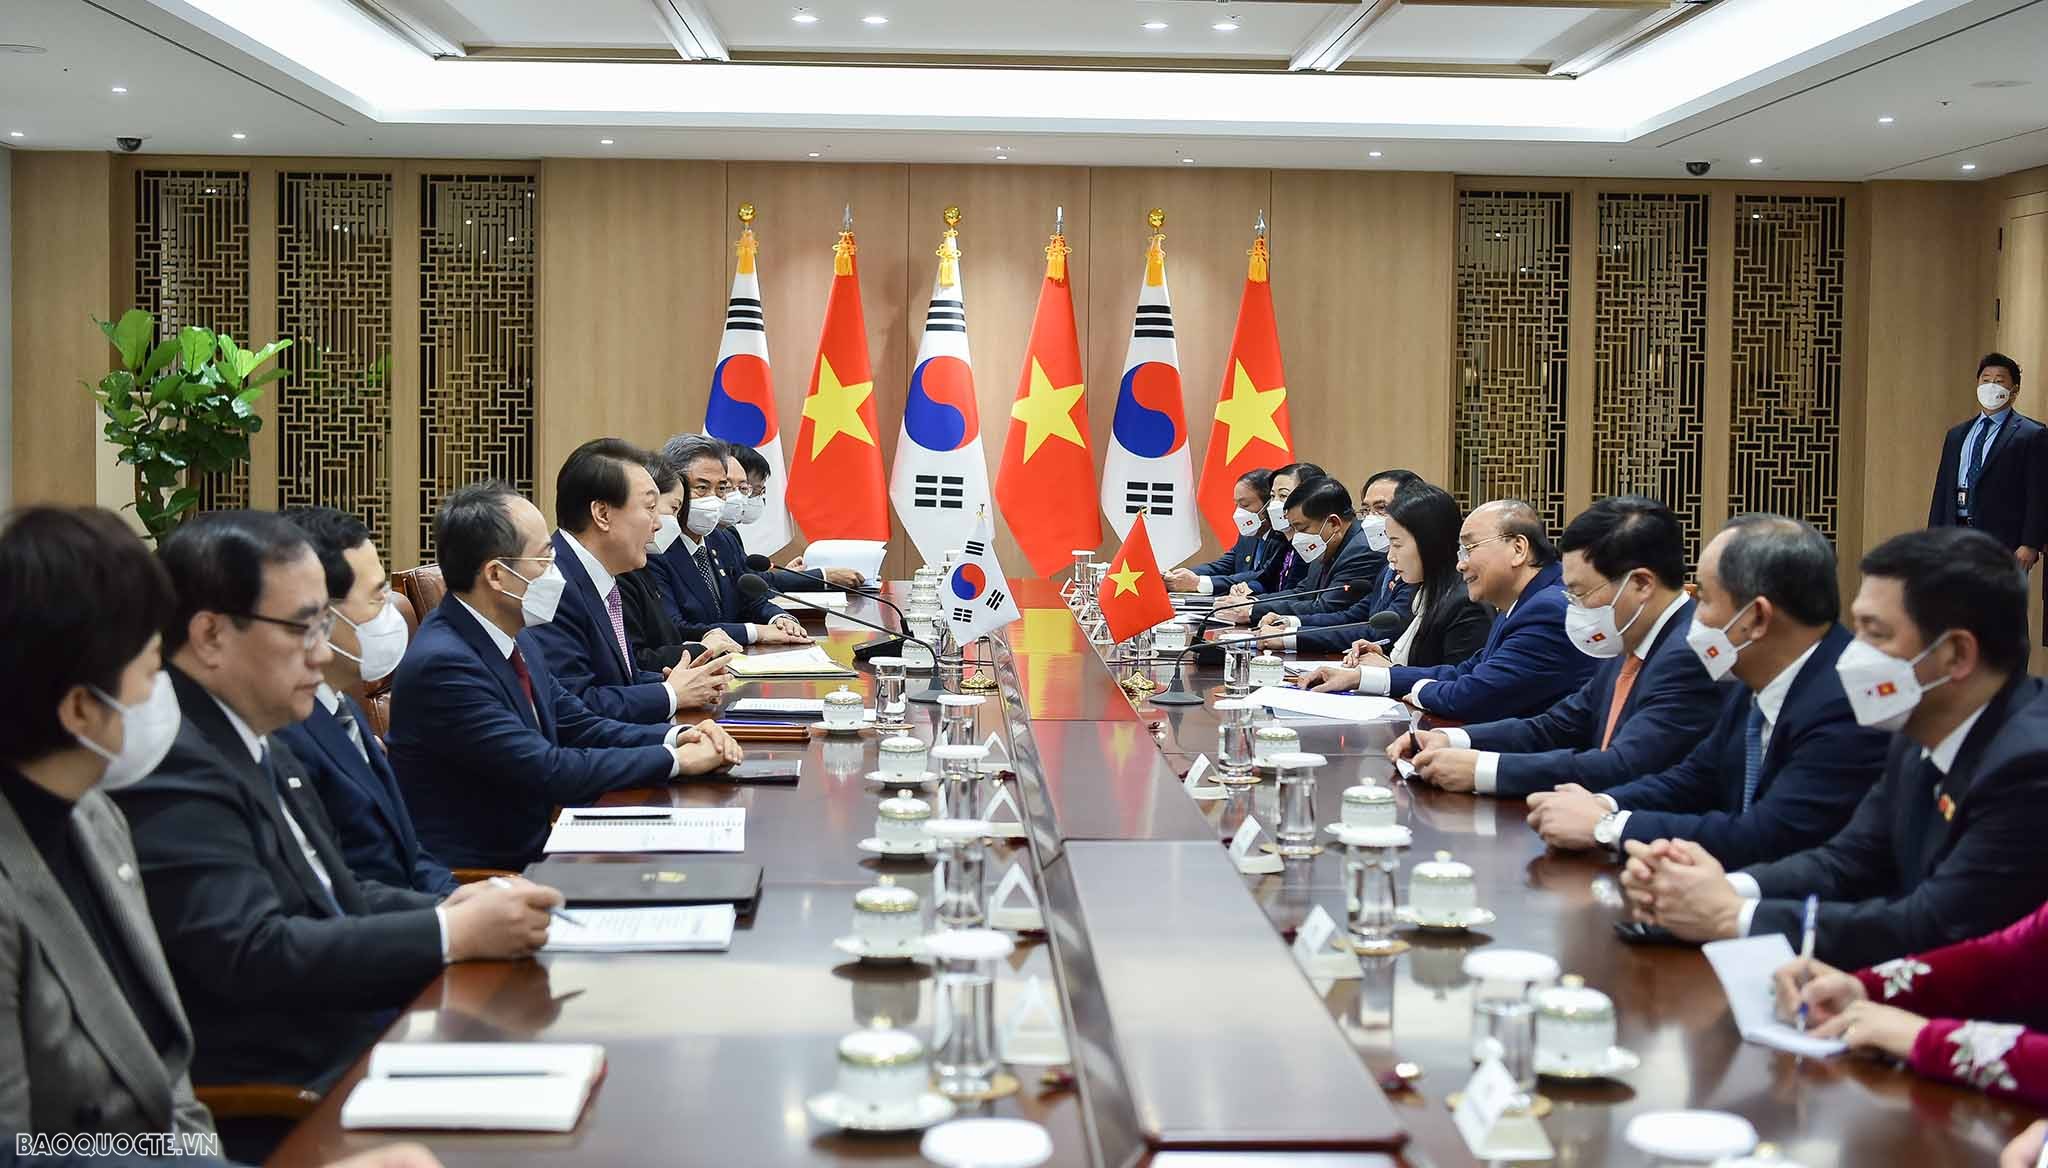 Hàn Quốc bắn 21 phát đại bác đón chính thức Chủ tịch nước Nguyễn Xuân Phúc